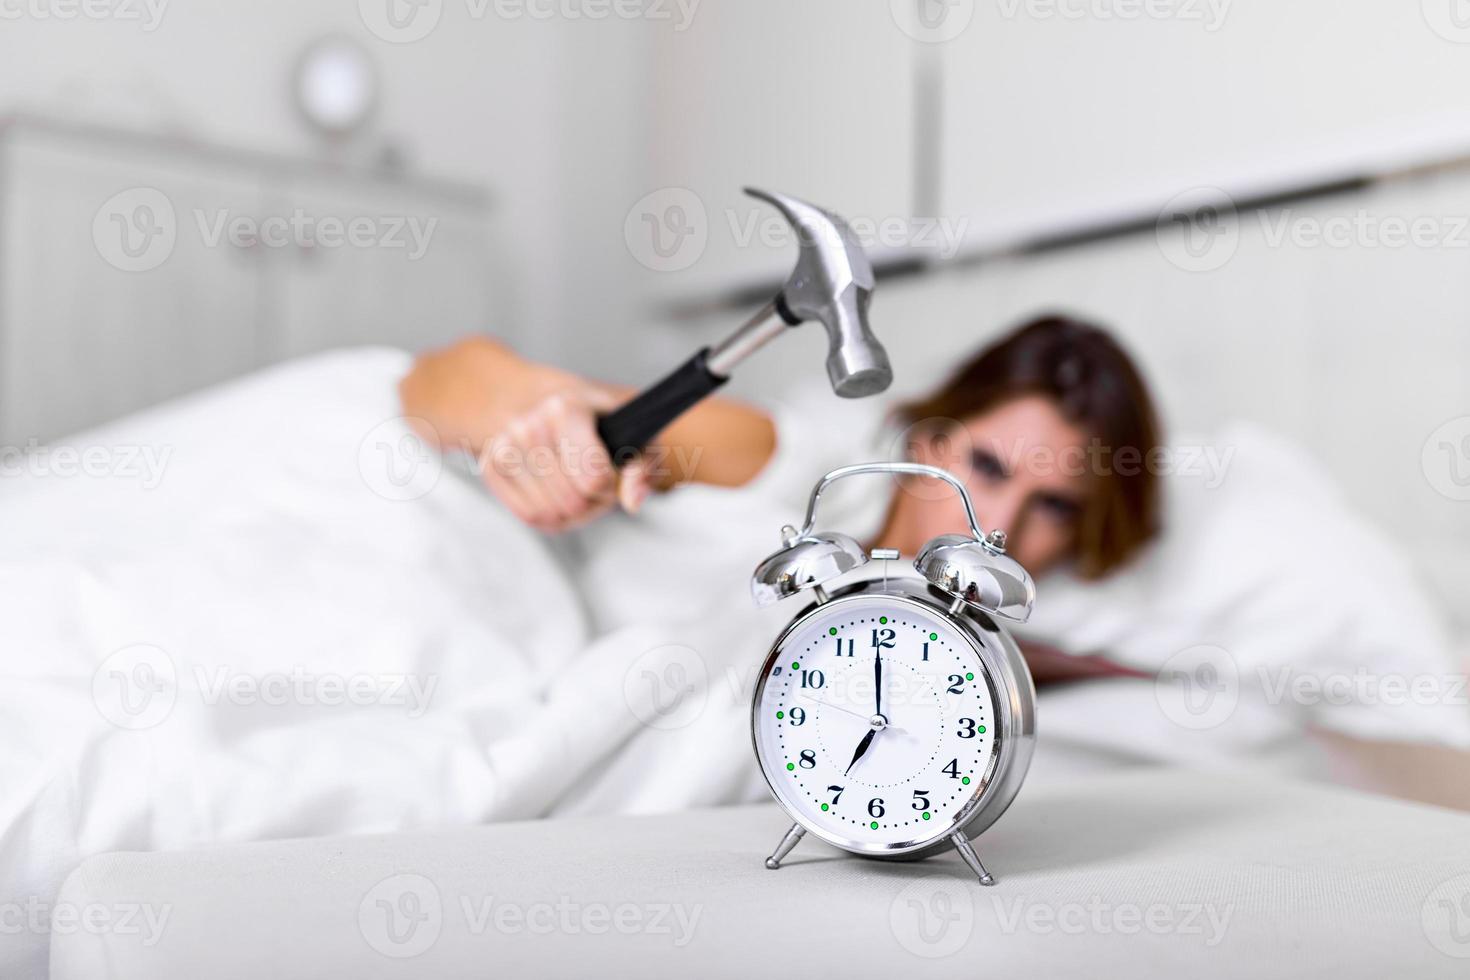 jovem tenta quebrar o despertador com martelo, destruir o relógio. menina deitada na cama desligando um despertador com martelo pela manhã às 7h. foto